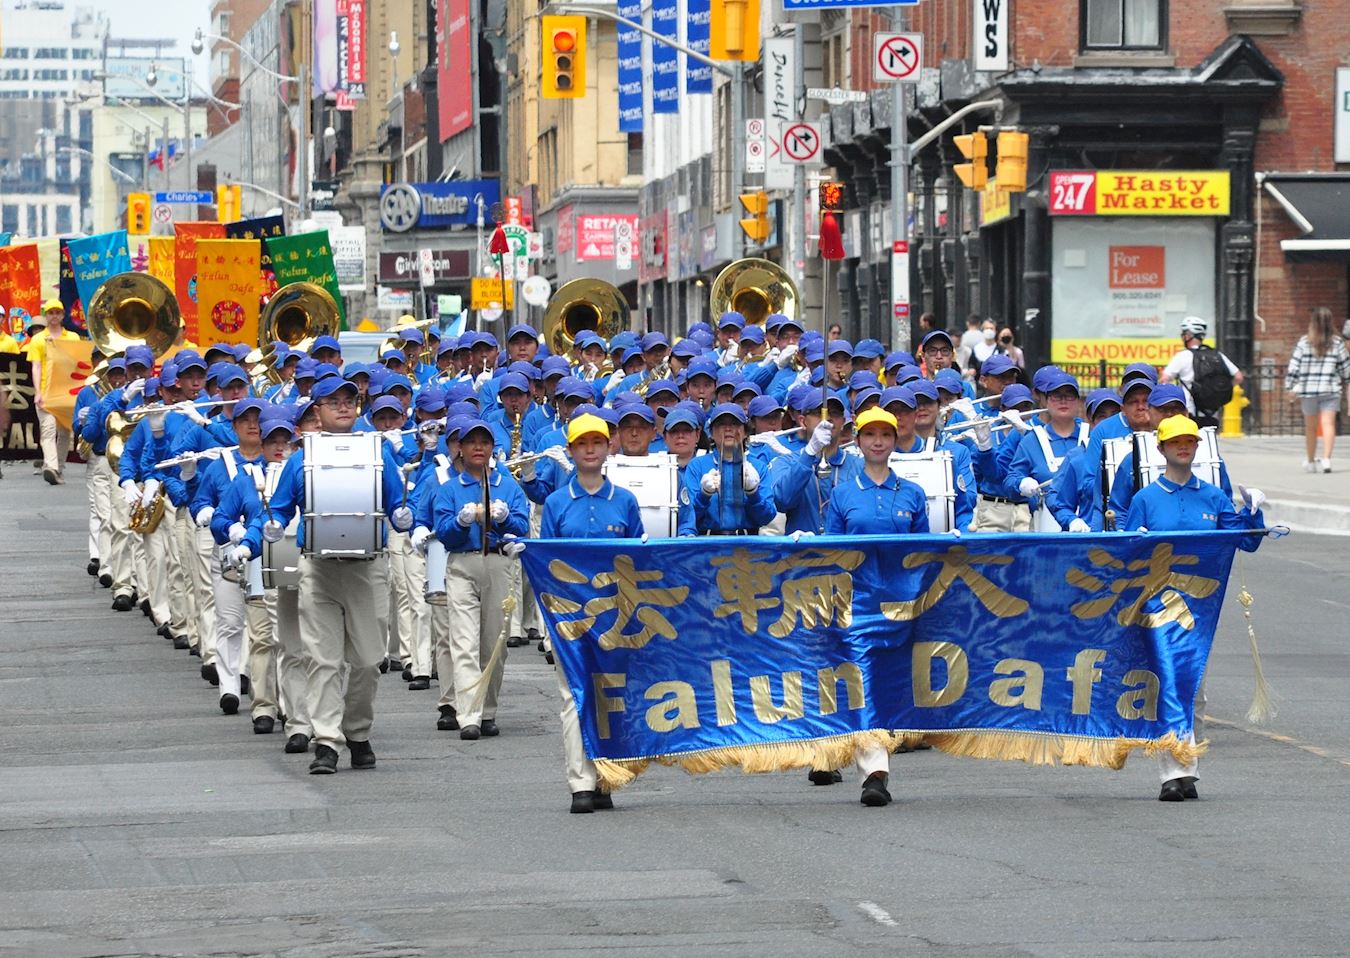 Image for article Toronto: Çin'deki Zulmü Ortaya Çıkarmak İçin Düzenlenen Geçit Töreni Sırasında Halktan Falun Dafa'ya Övgü